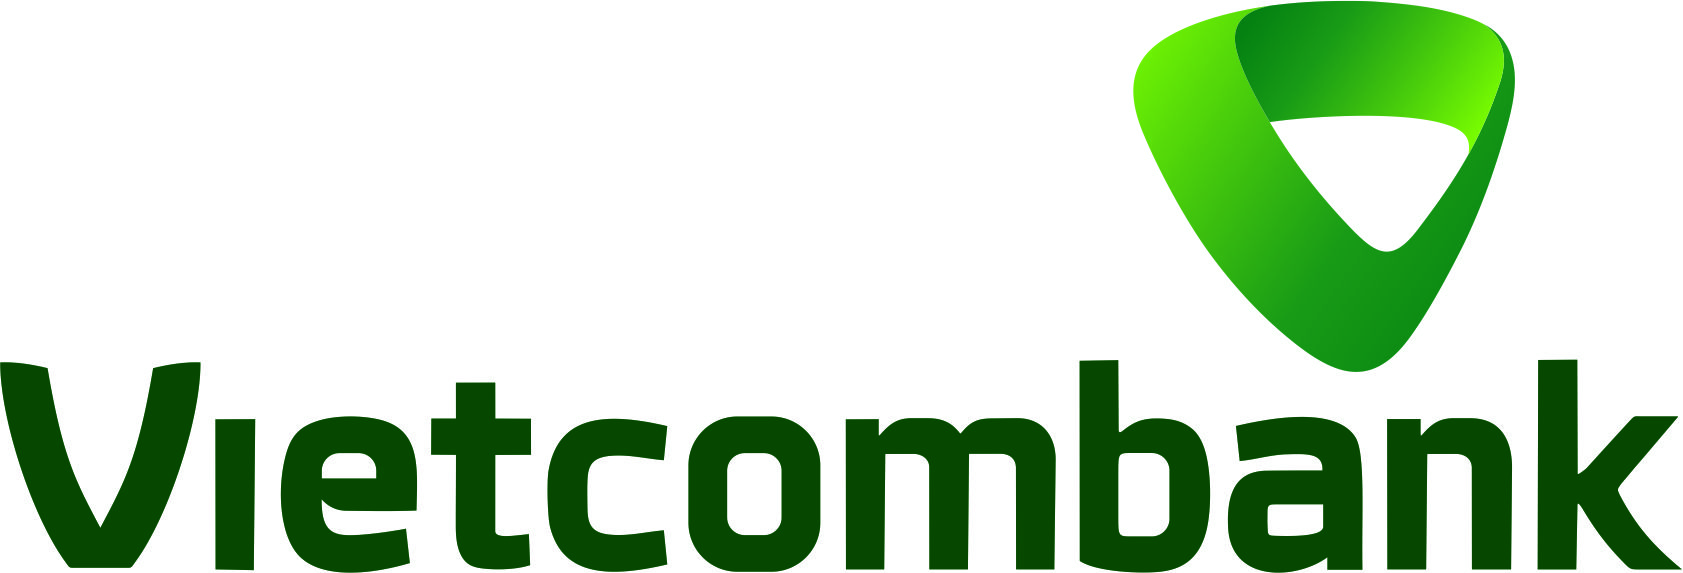 vector logo vietcombank - Công ty cổ phần giám định thẩm định Sài ...